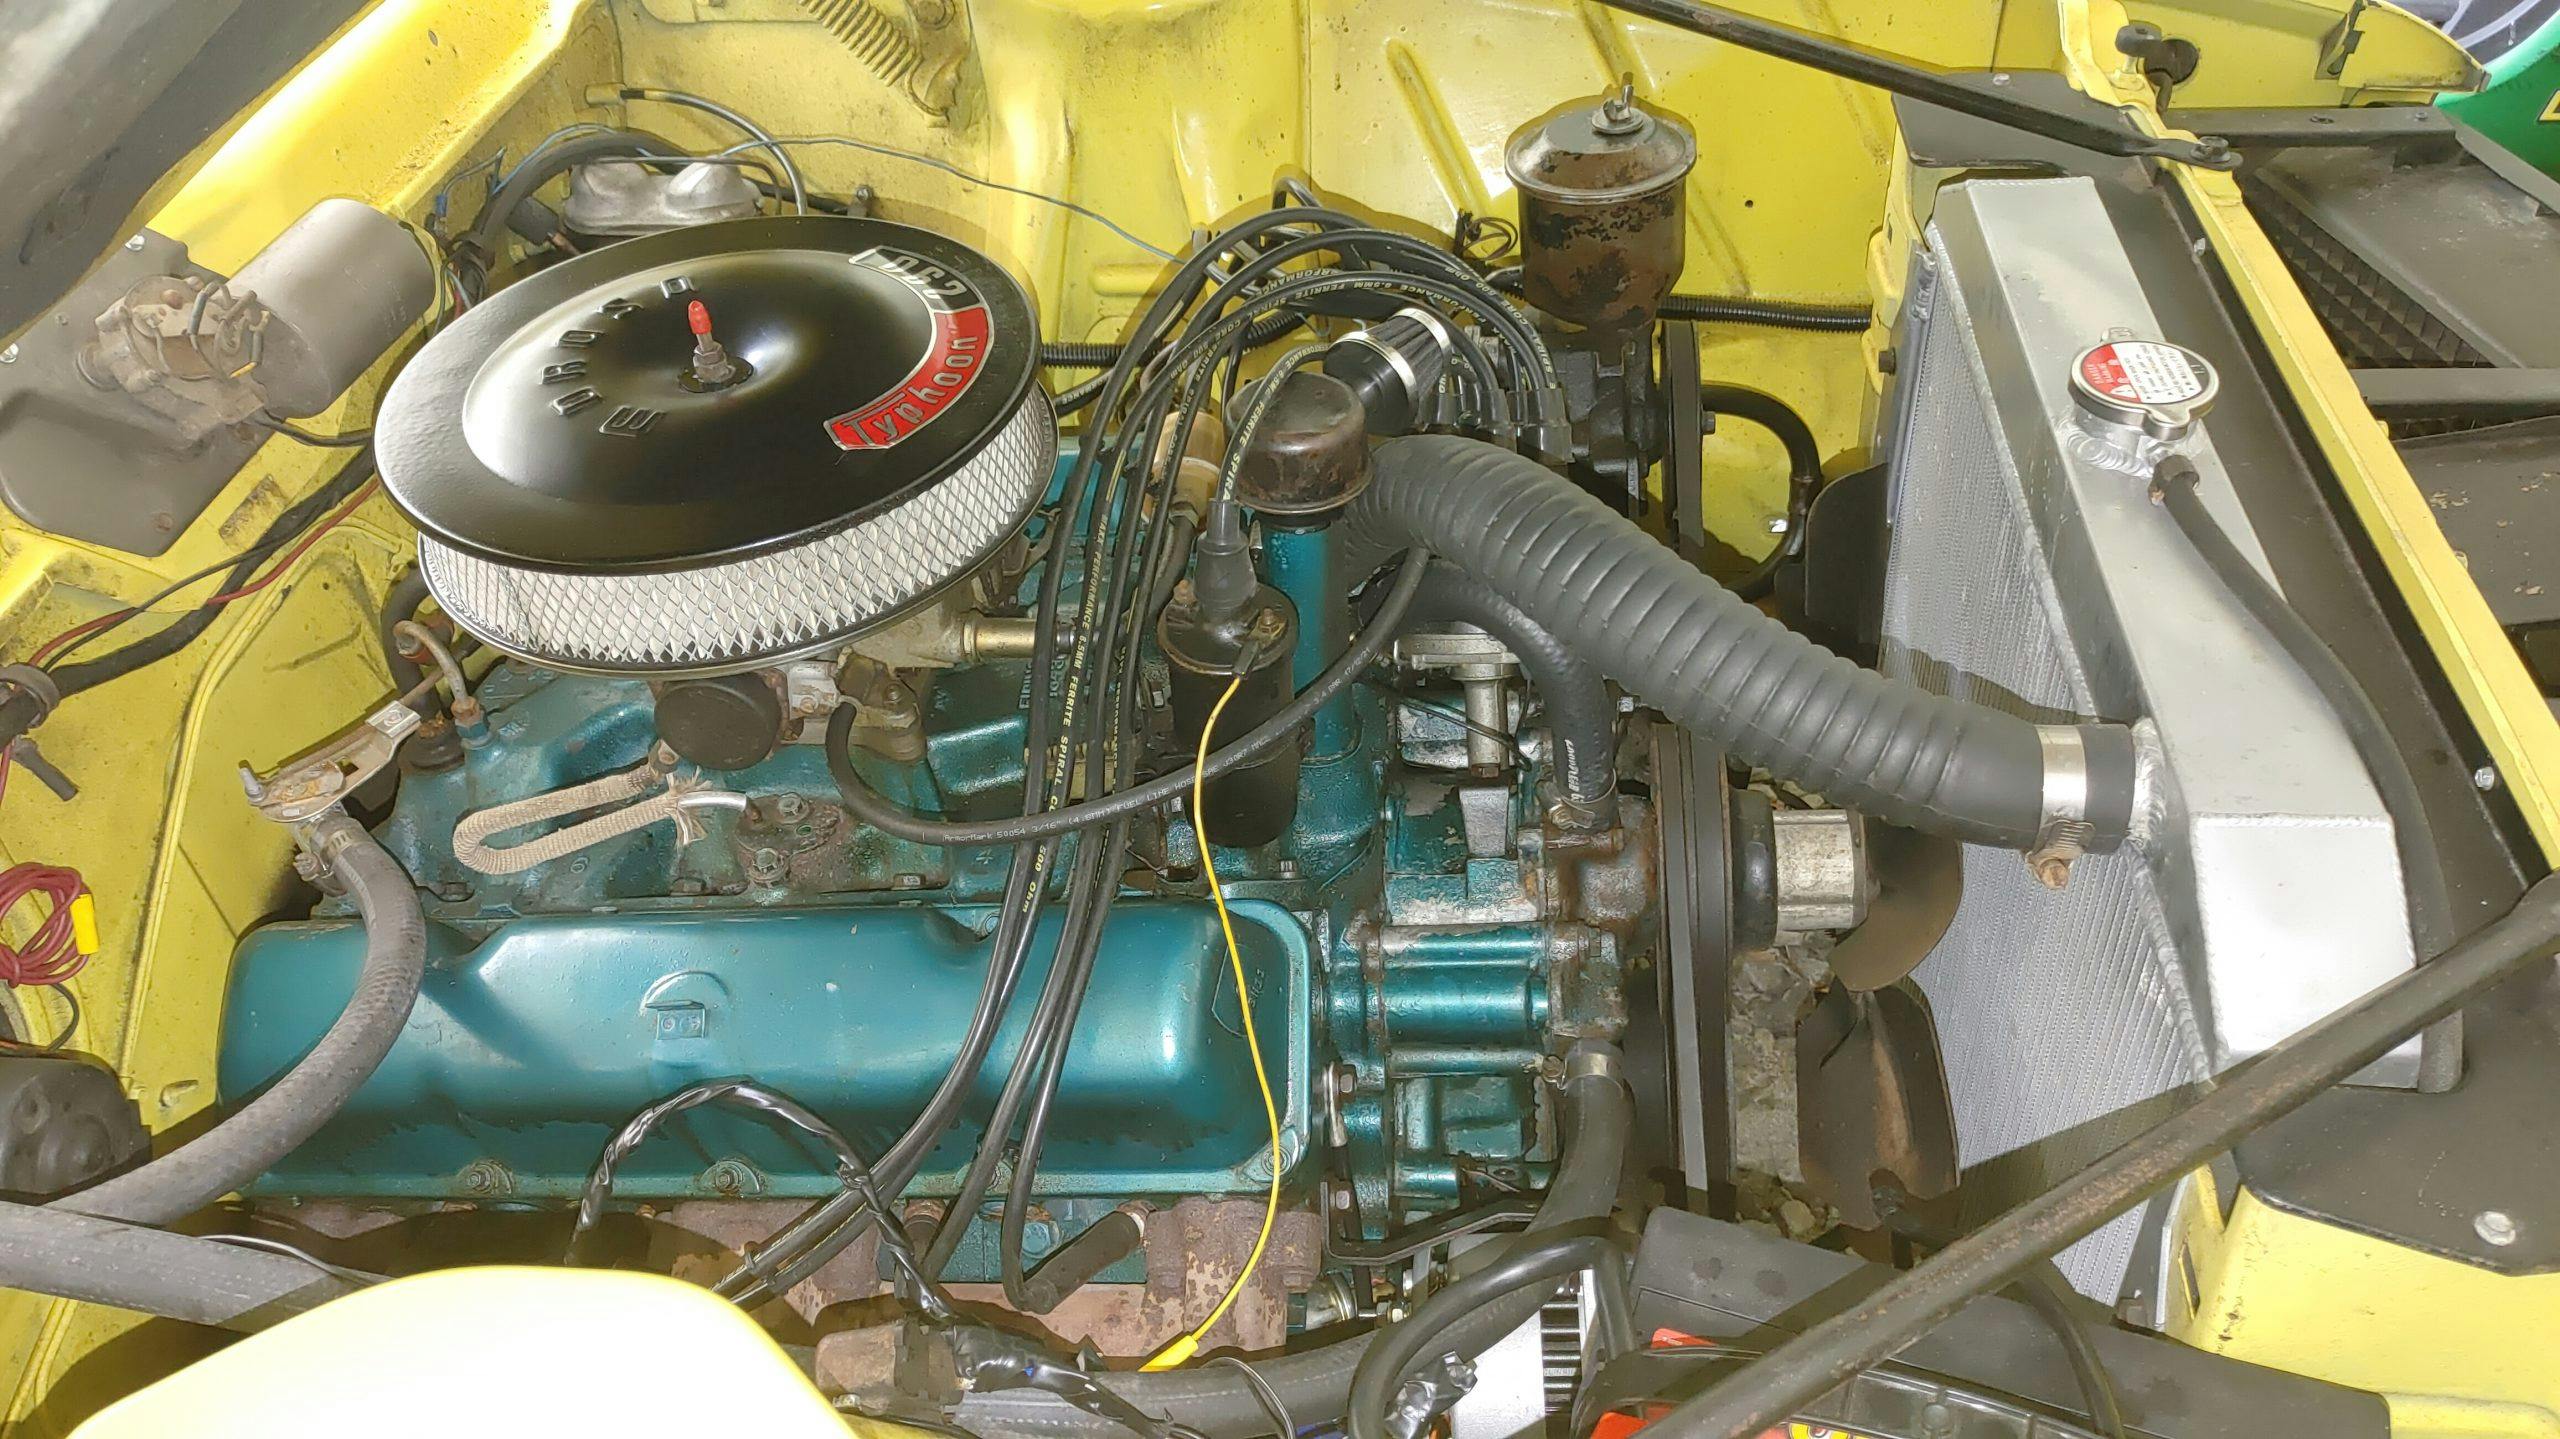 AMC Javelin engine